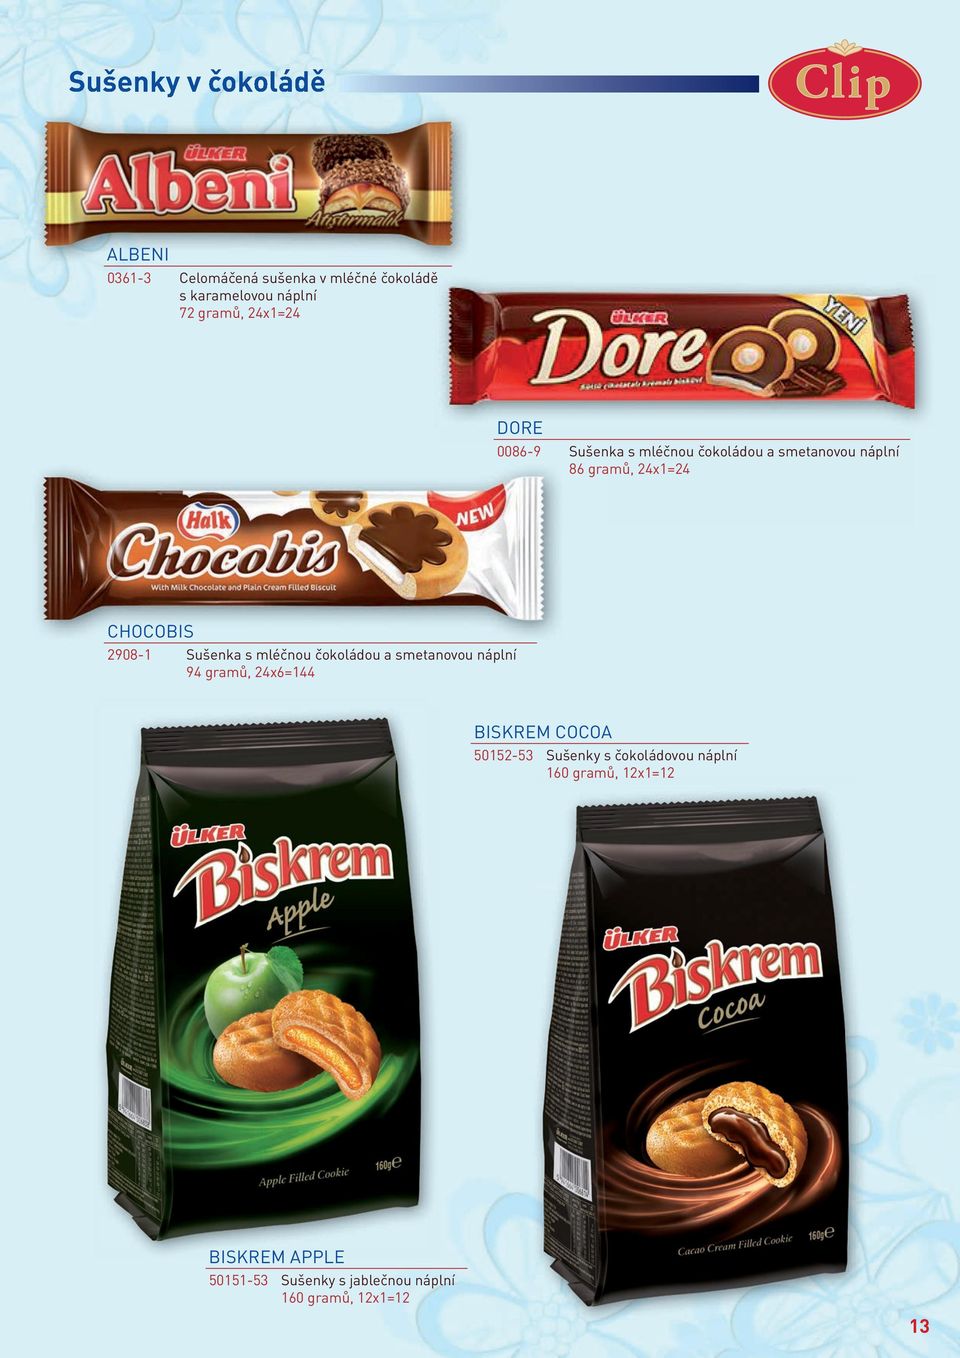 Sušenka s mléčnou čokoládou a smetanovou náplní 94 gramů, 24x6=144 BISKREM COCOA 50152-53 Sušenky s